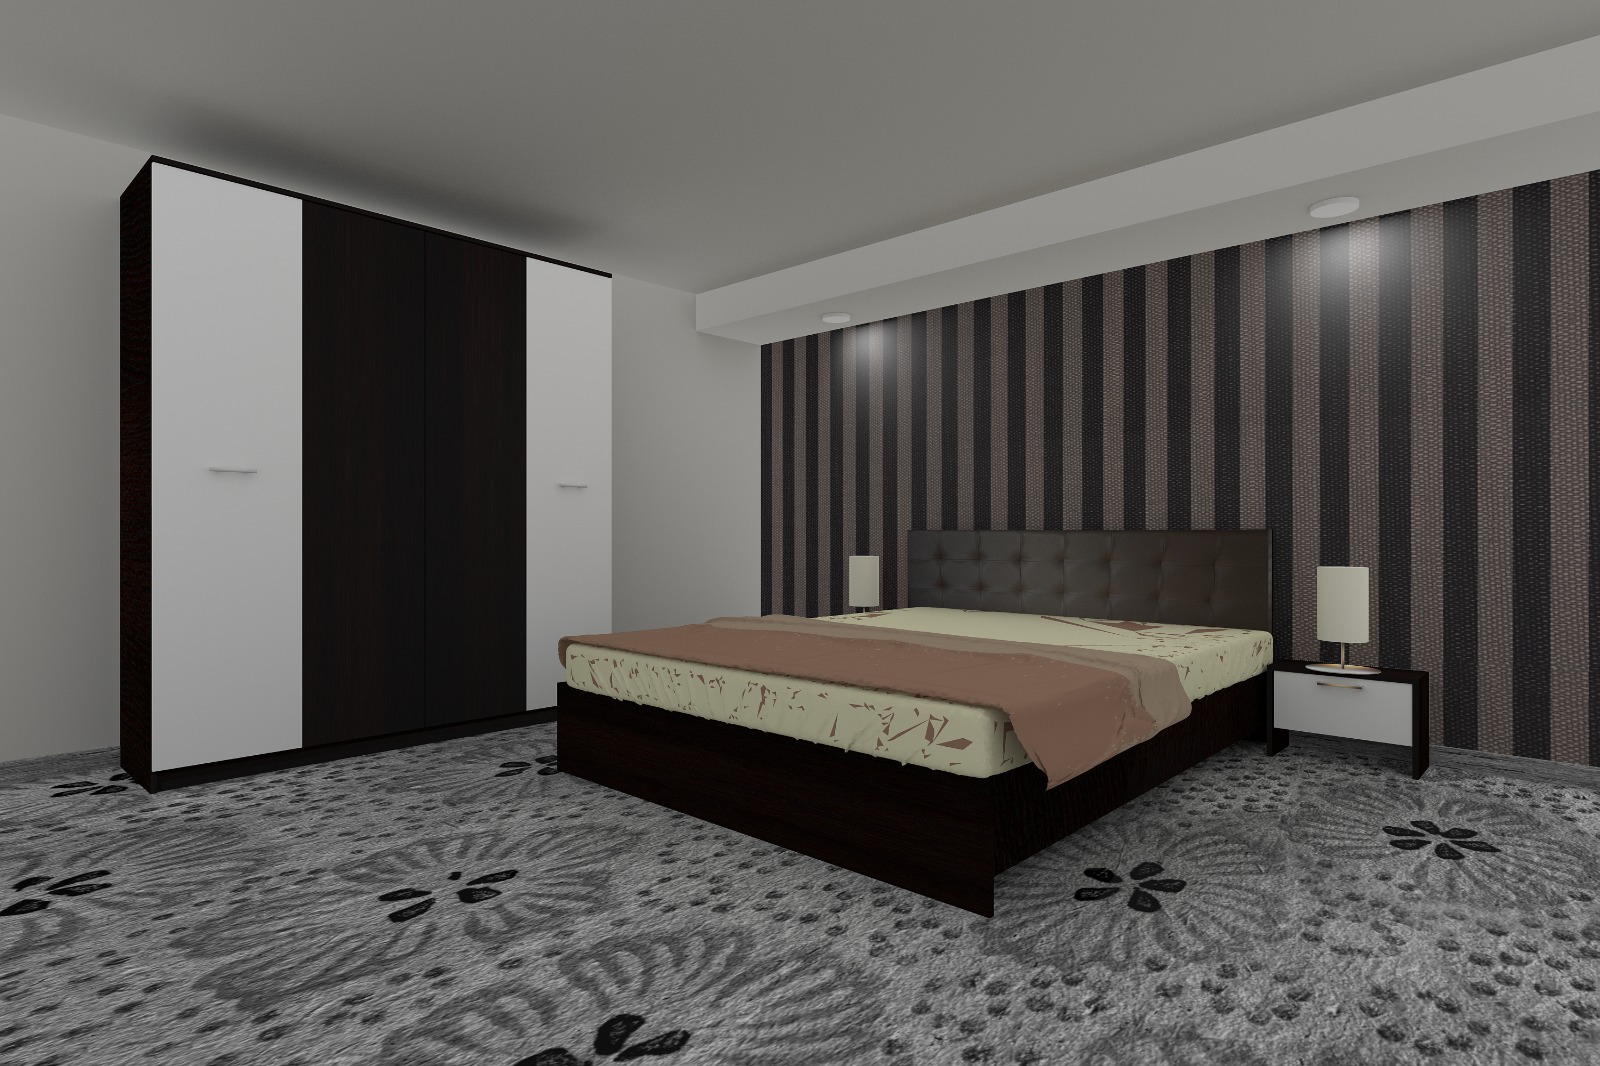 Dormitor Luiza 4U4PTM, culoare magia (wenge) / alb, cu pat tapiterie maro 140 x 200, dulap cu 4 usi 164 cm si 2 noptiere